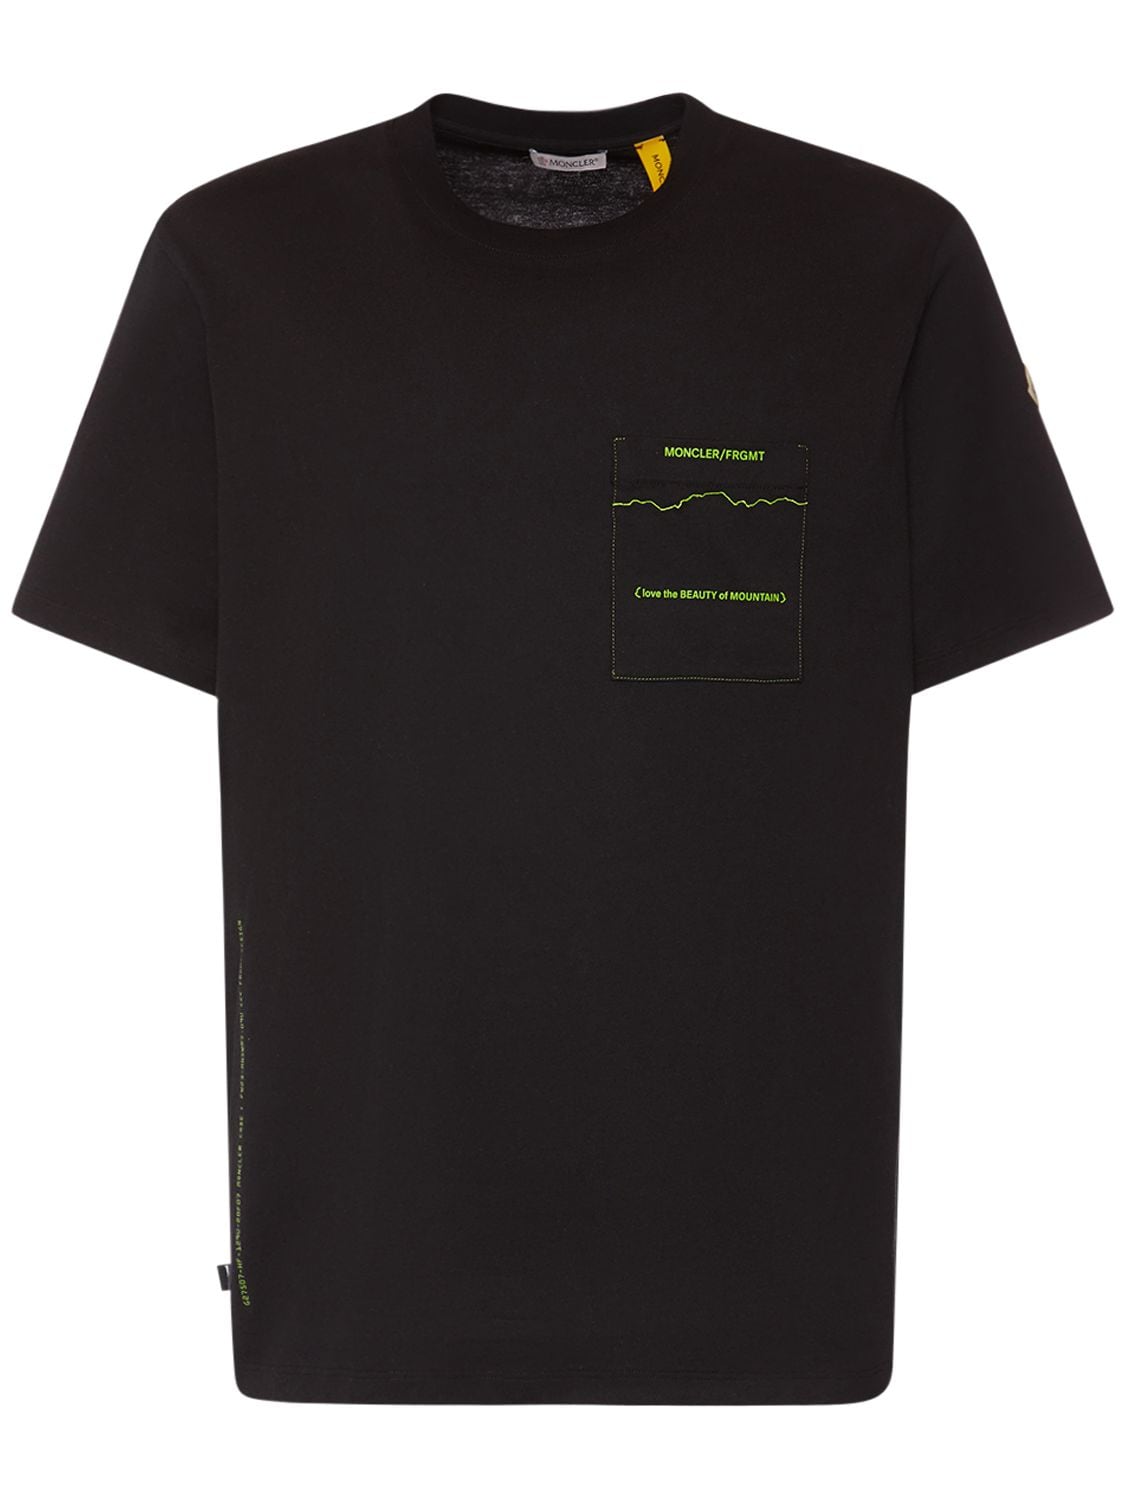 Moncler Genius Moncler X Frgmt Mountain Jersey T-shirt In Black